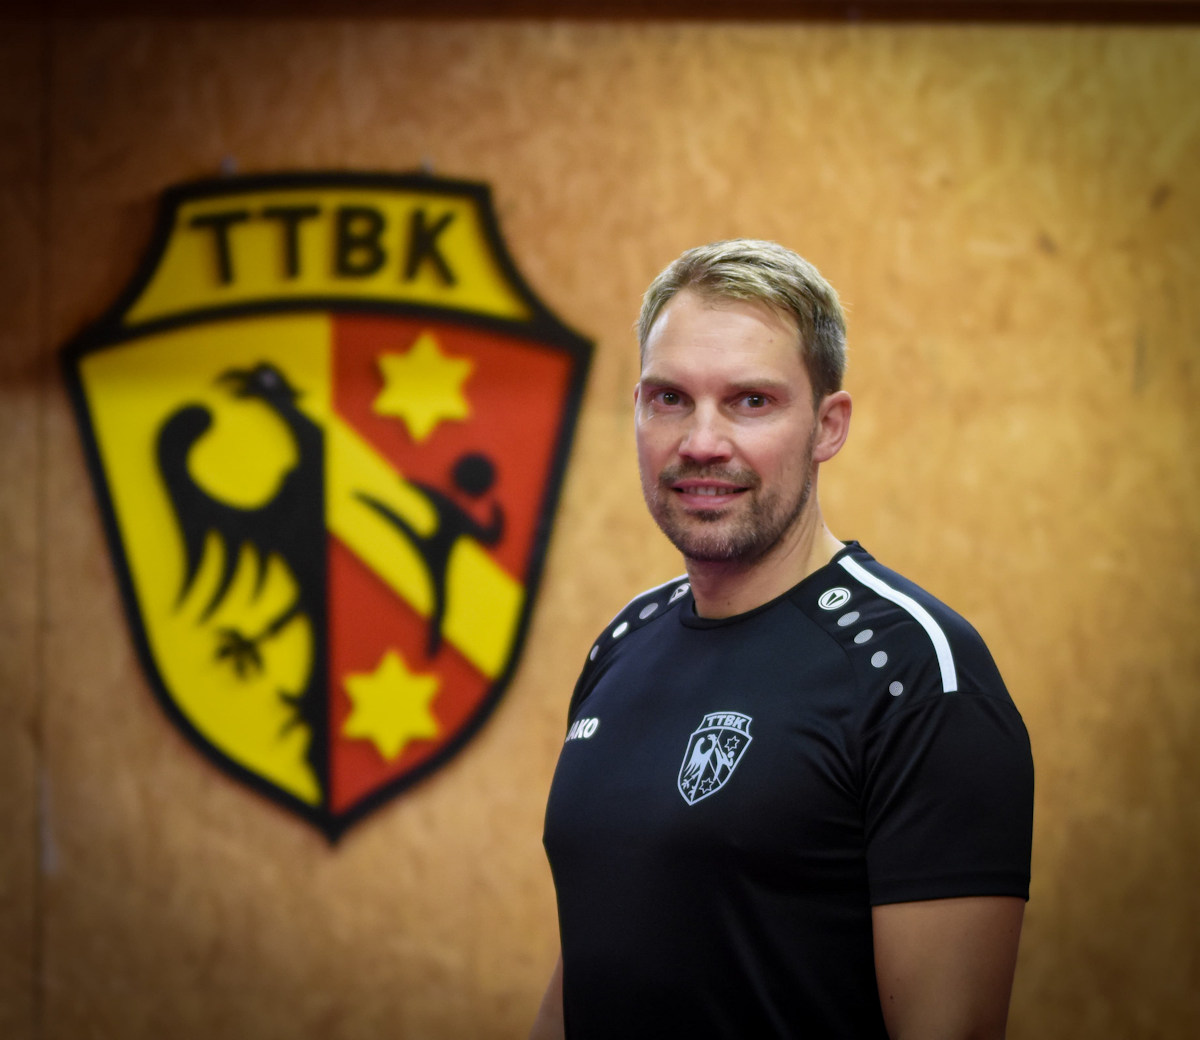 Maik Niepelt – Das Taekwondo Team Buron Kaufbeuren hat einen neuen Prüfer in seinen Reihen